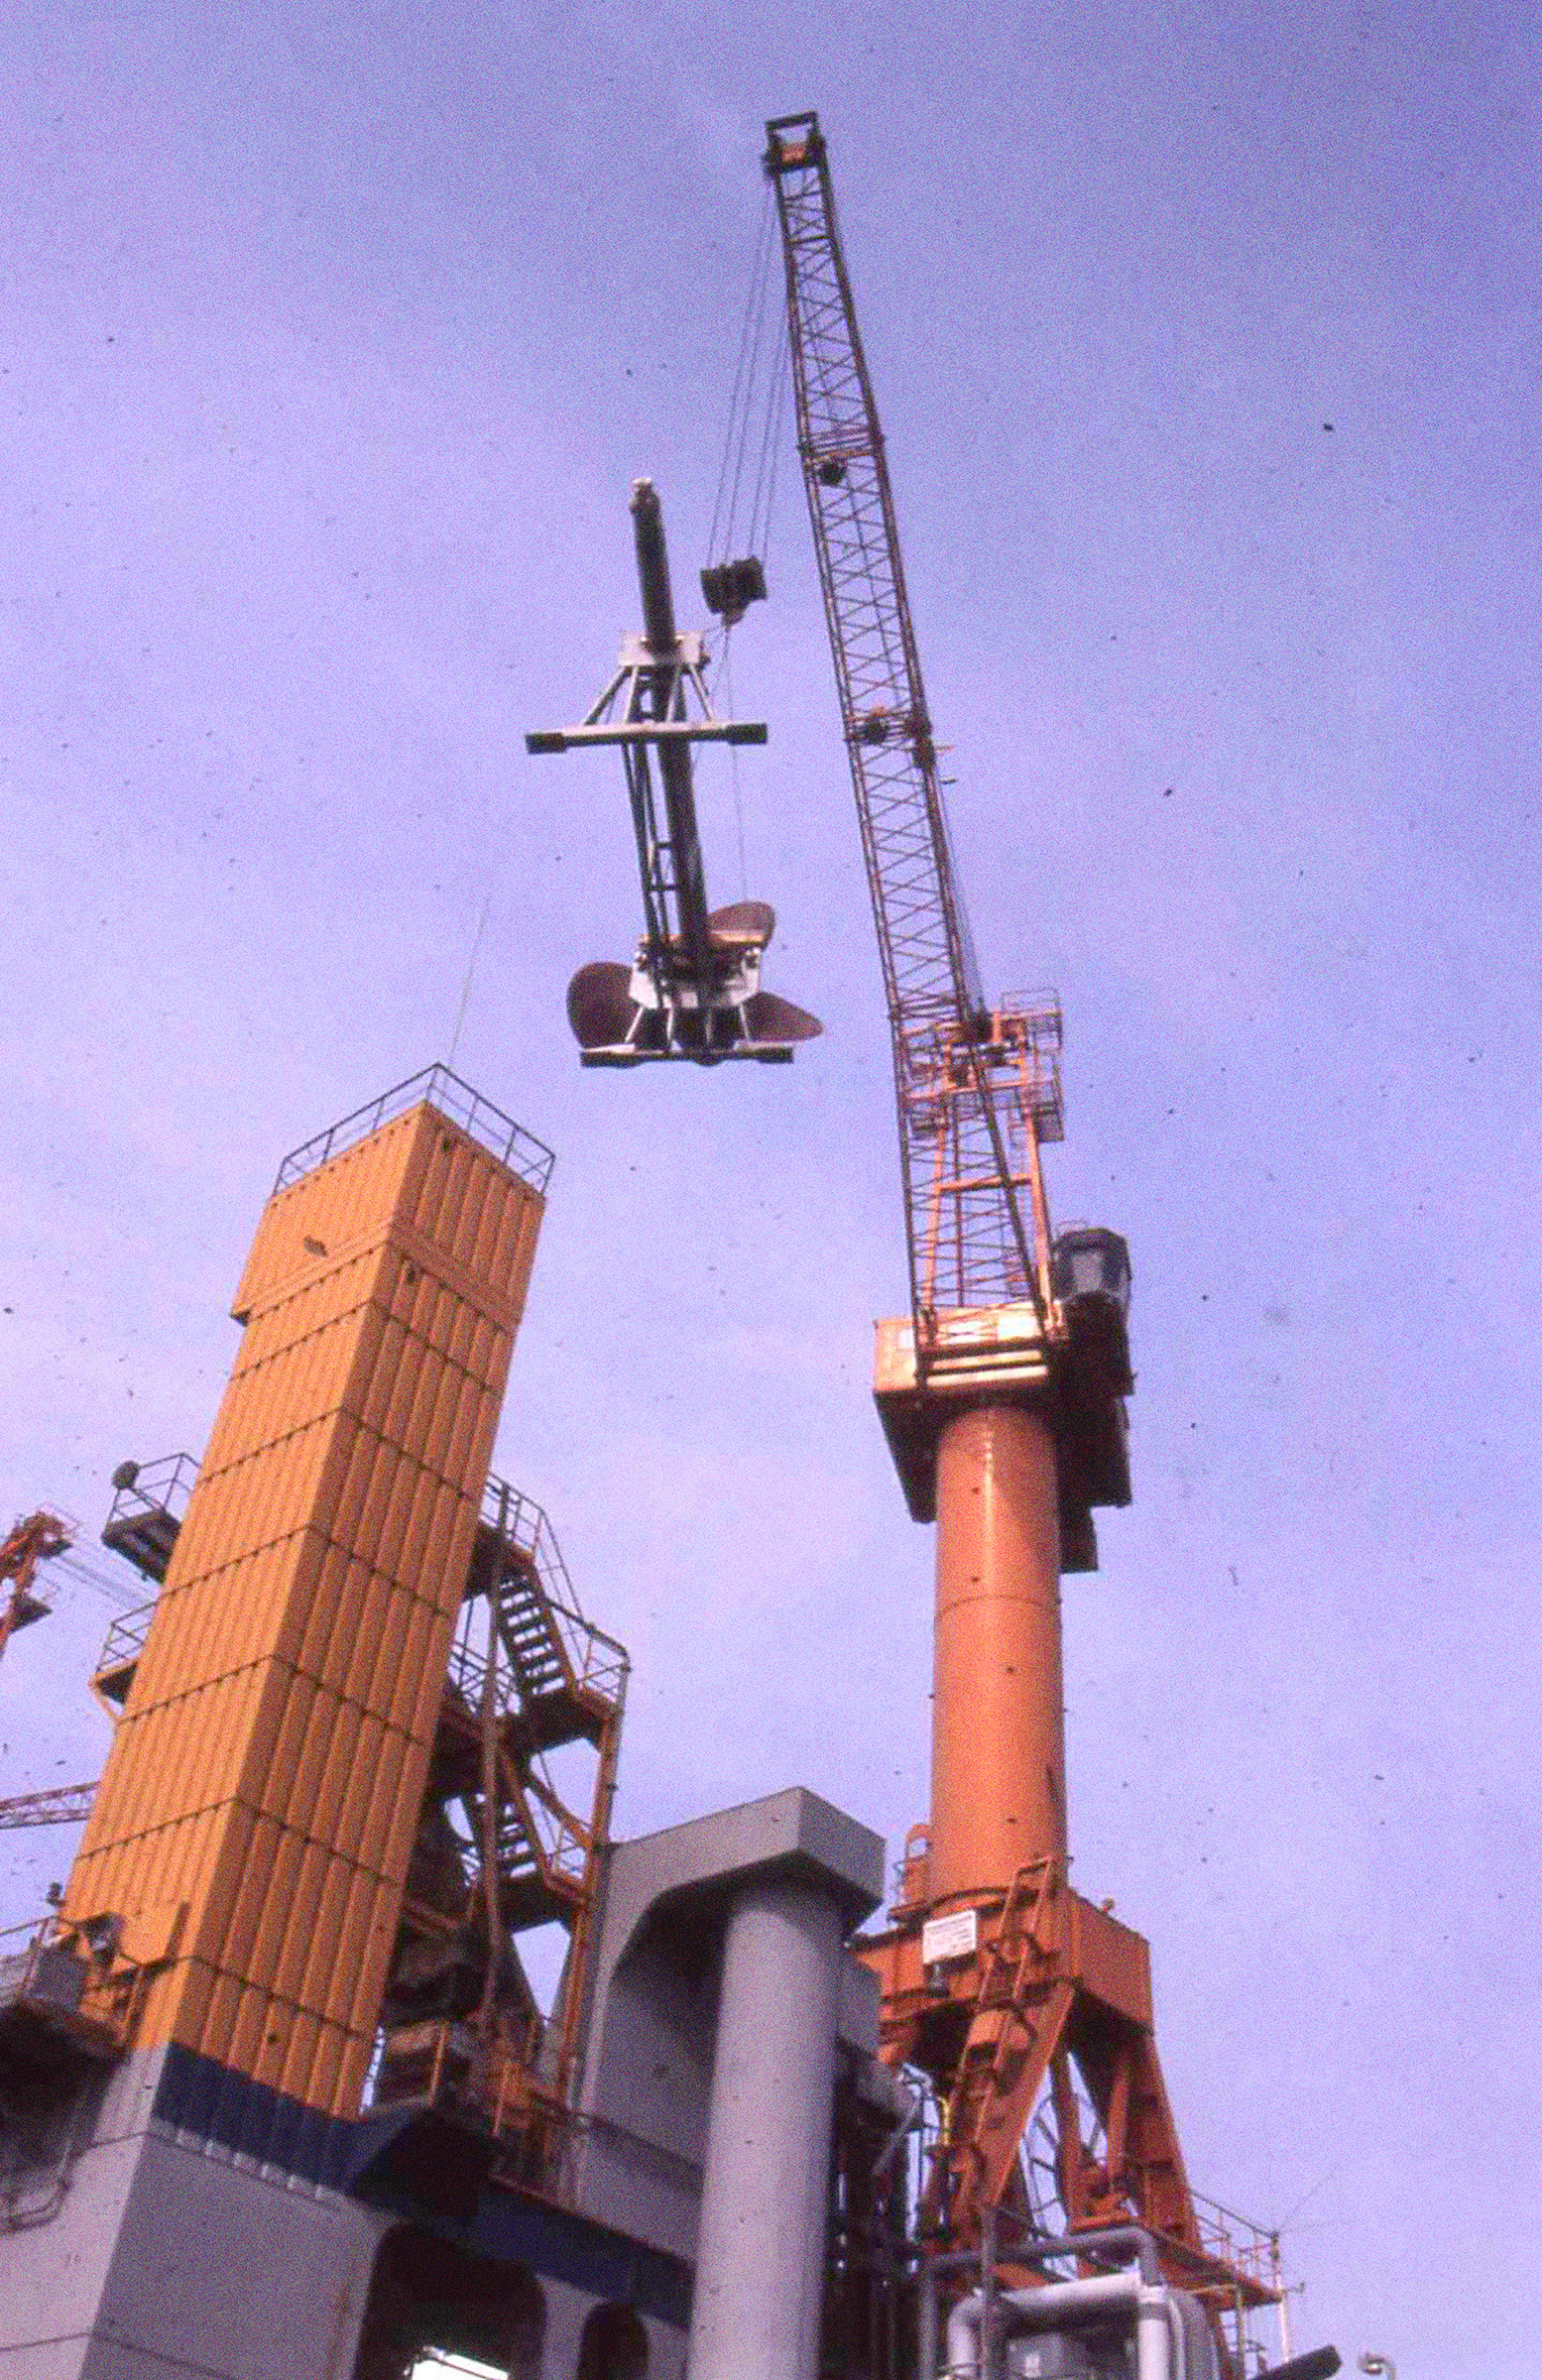 Die Propellerwelle hängt an einem Kran. Von unten fotografiert, im Hintergrund blauer Himmel.